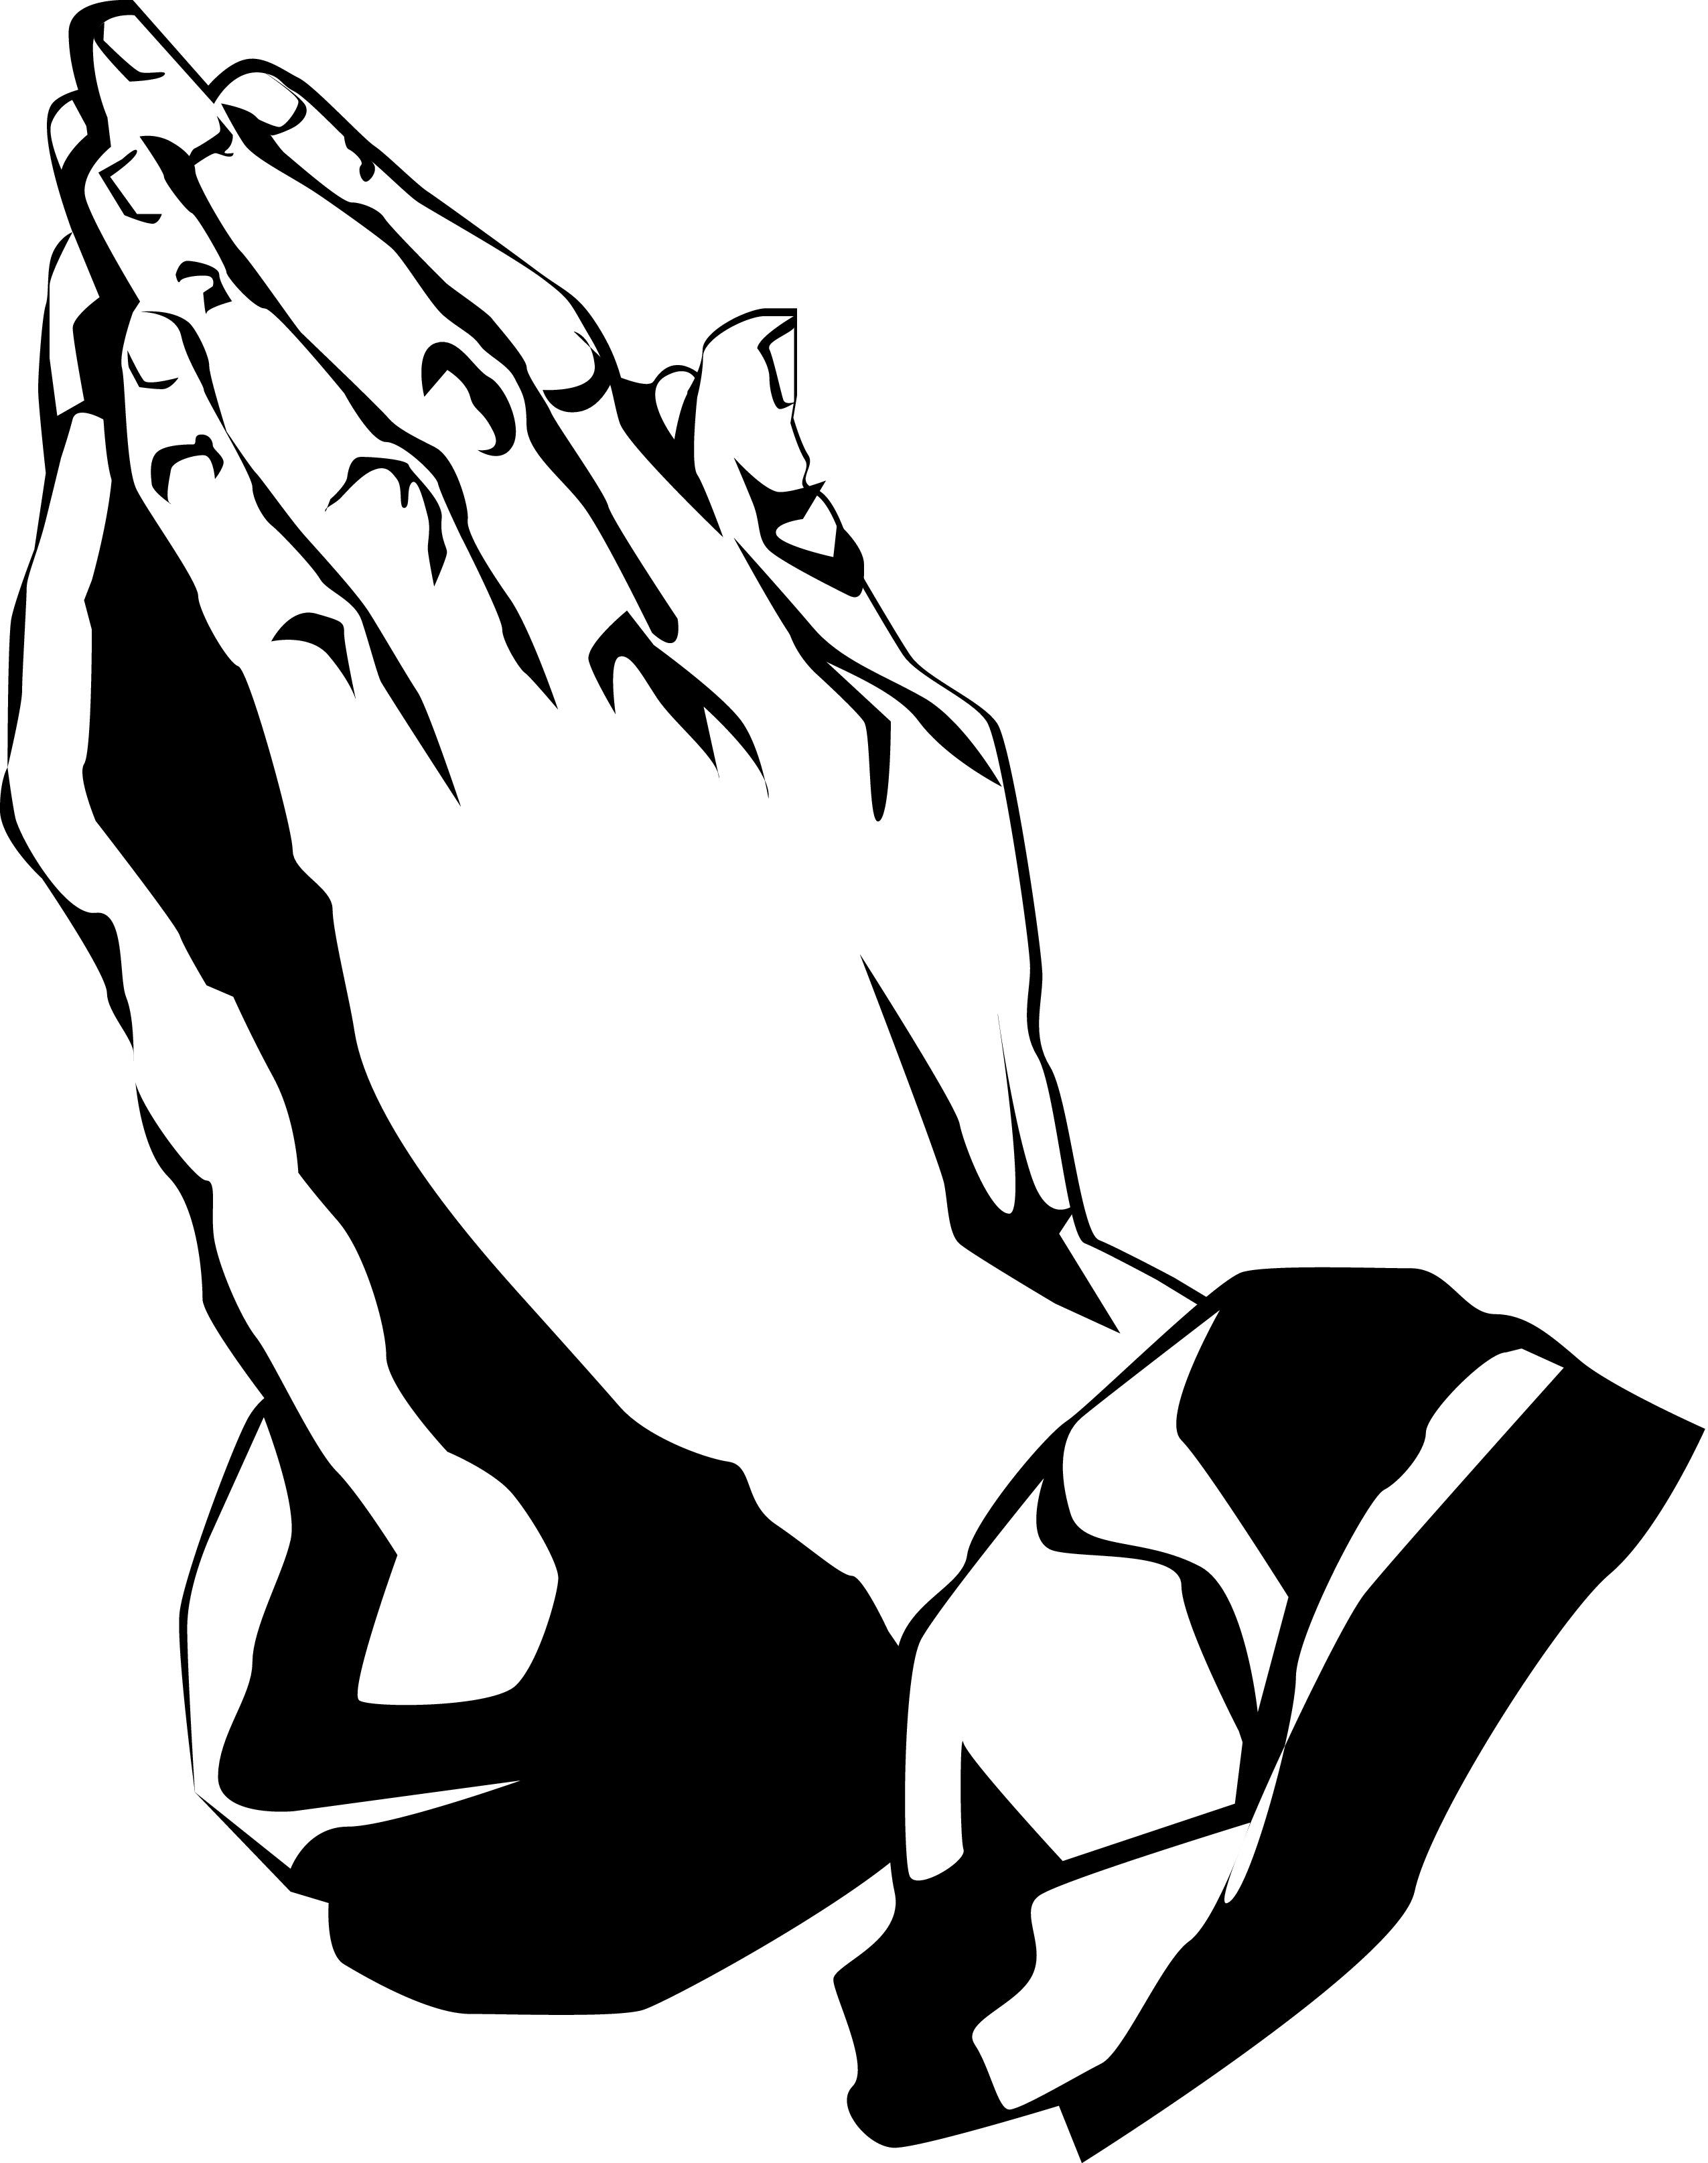 Church praying hands clipart 4